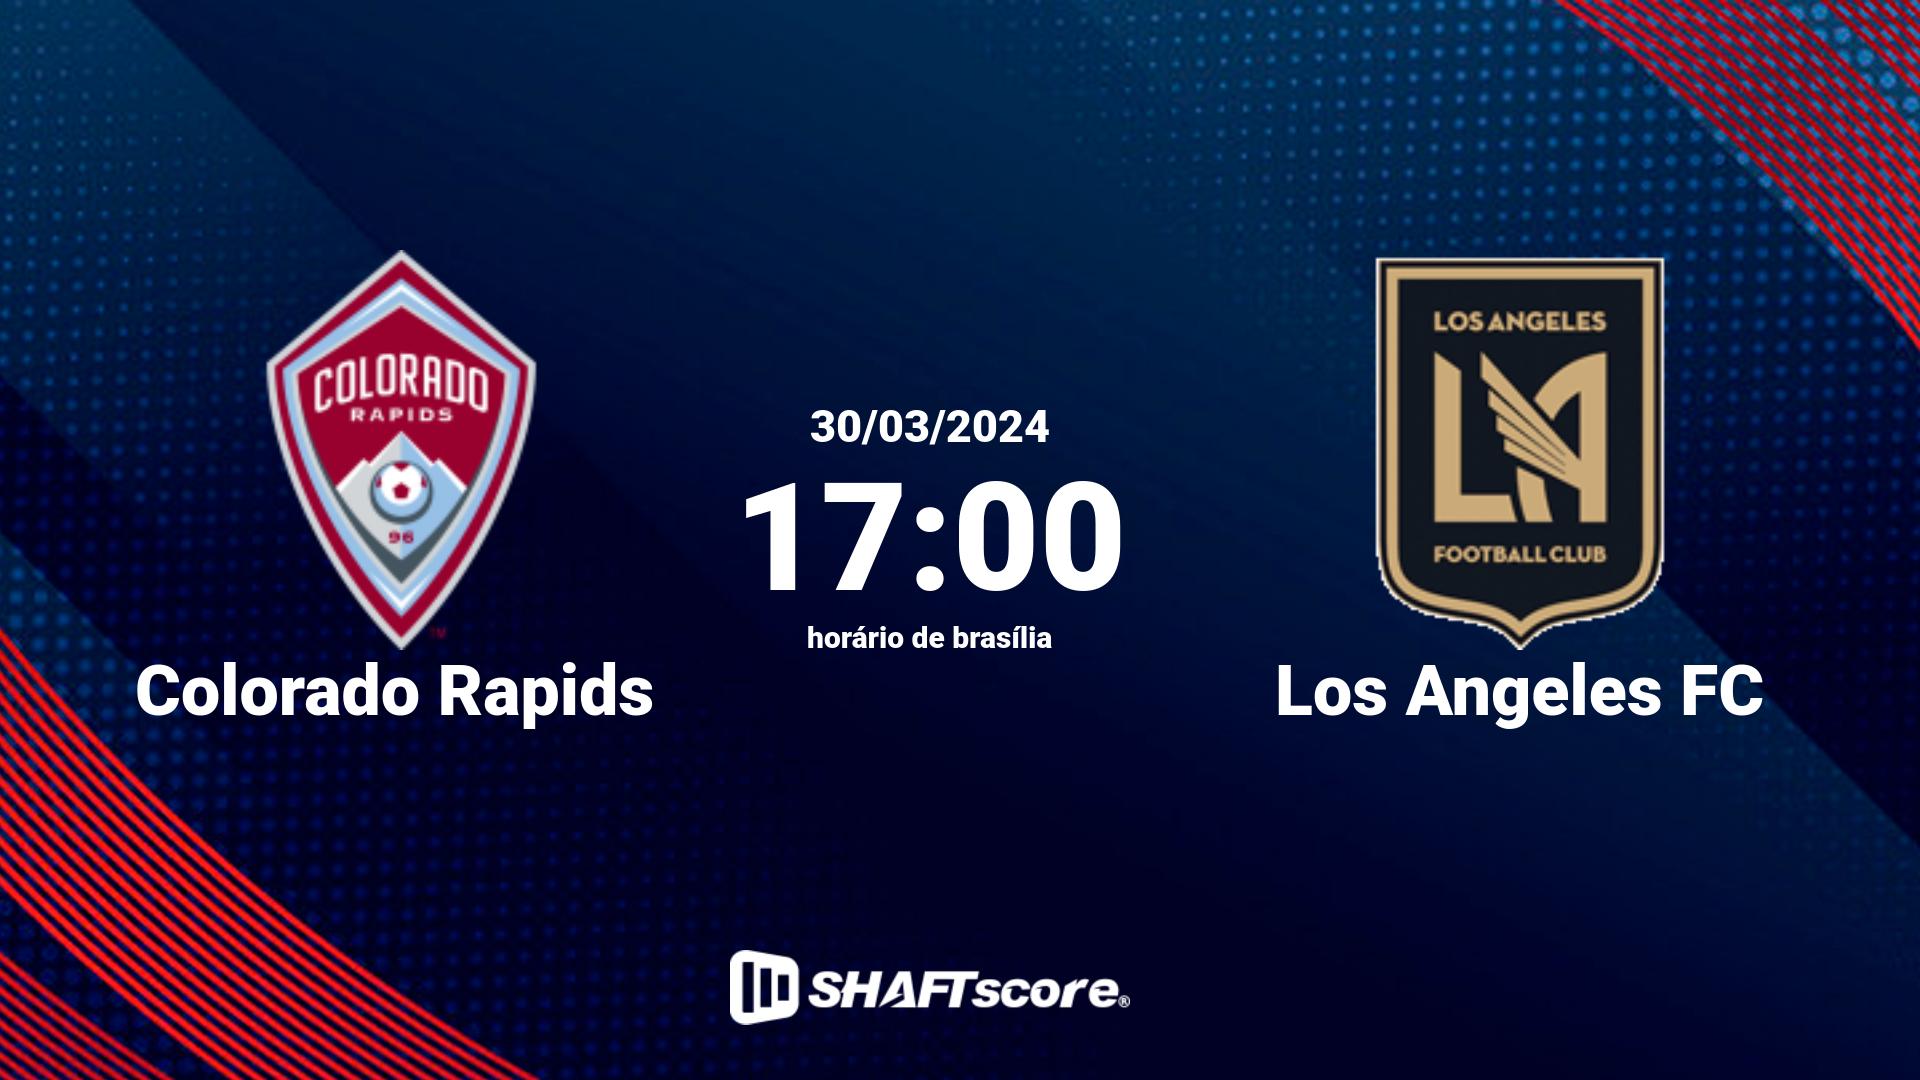 Estatísticas do jogo Colorado Rapids vs Los Angeles FC 30.03 17:00